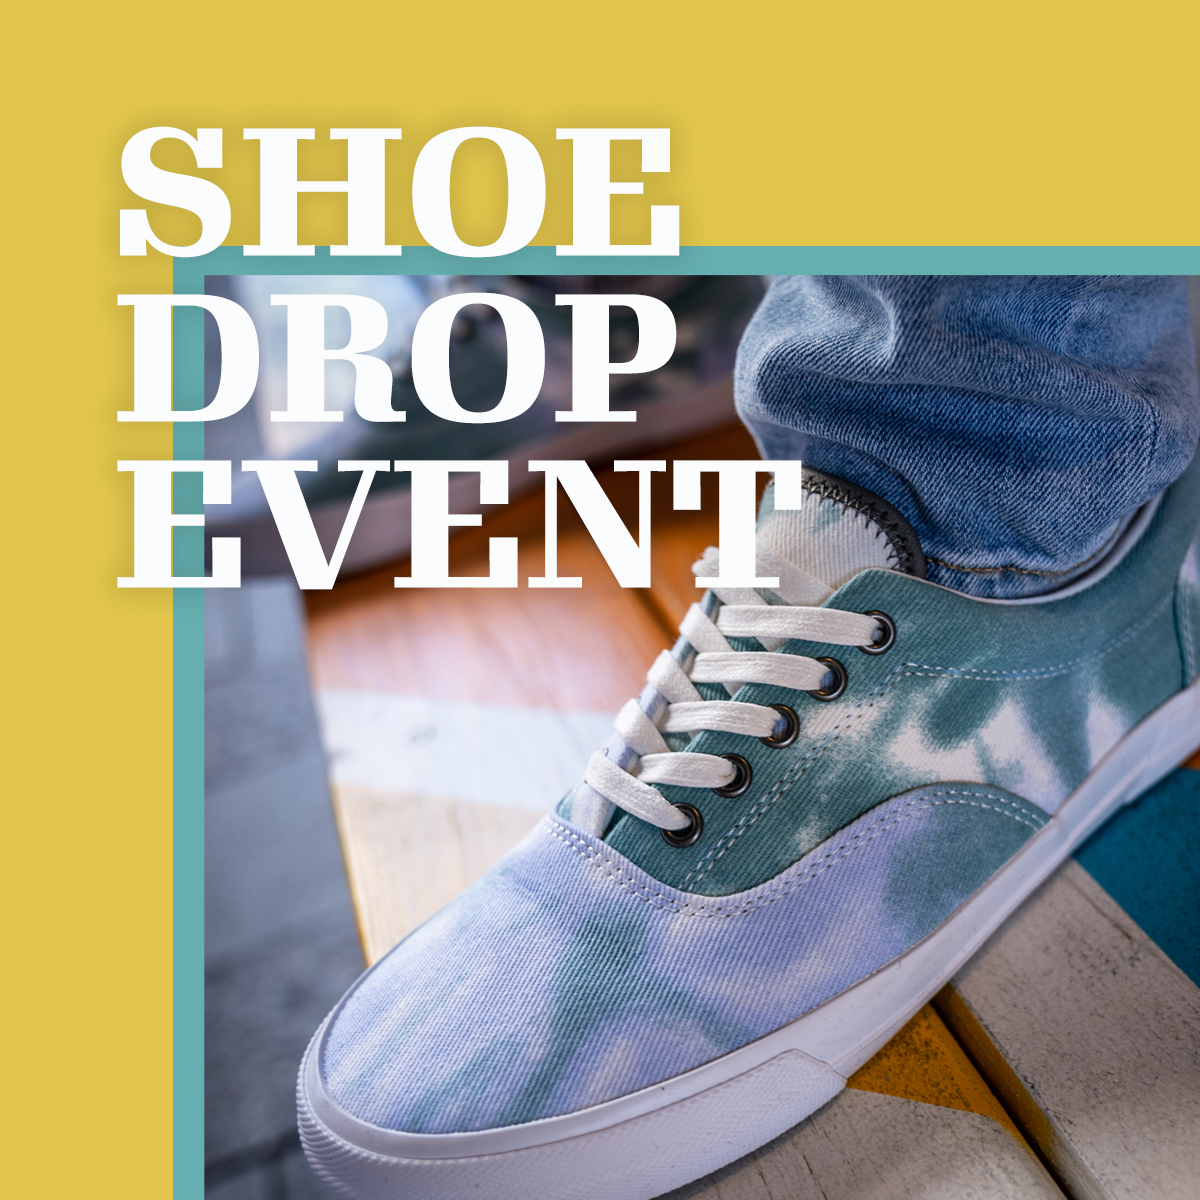 Shoe Drop Event